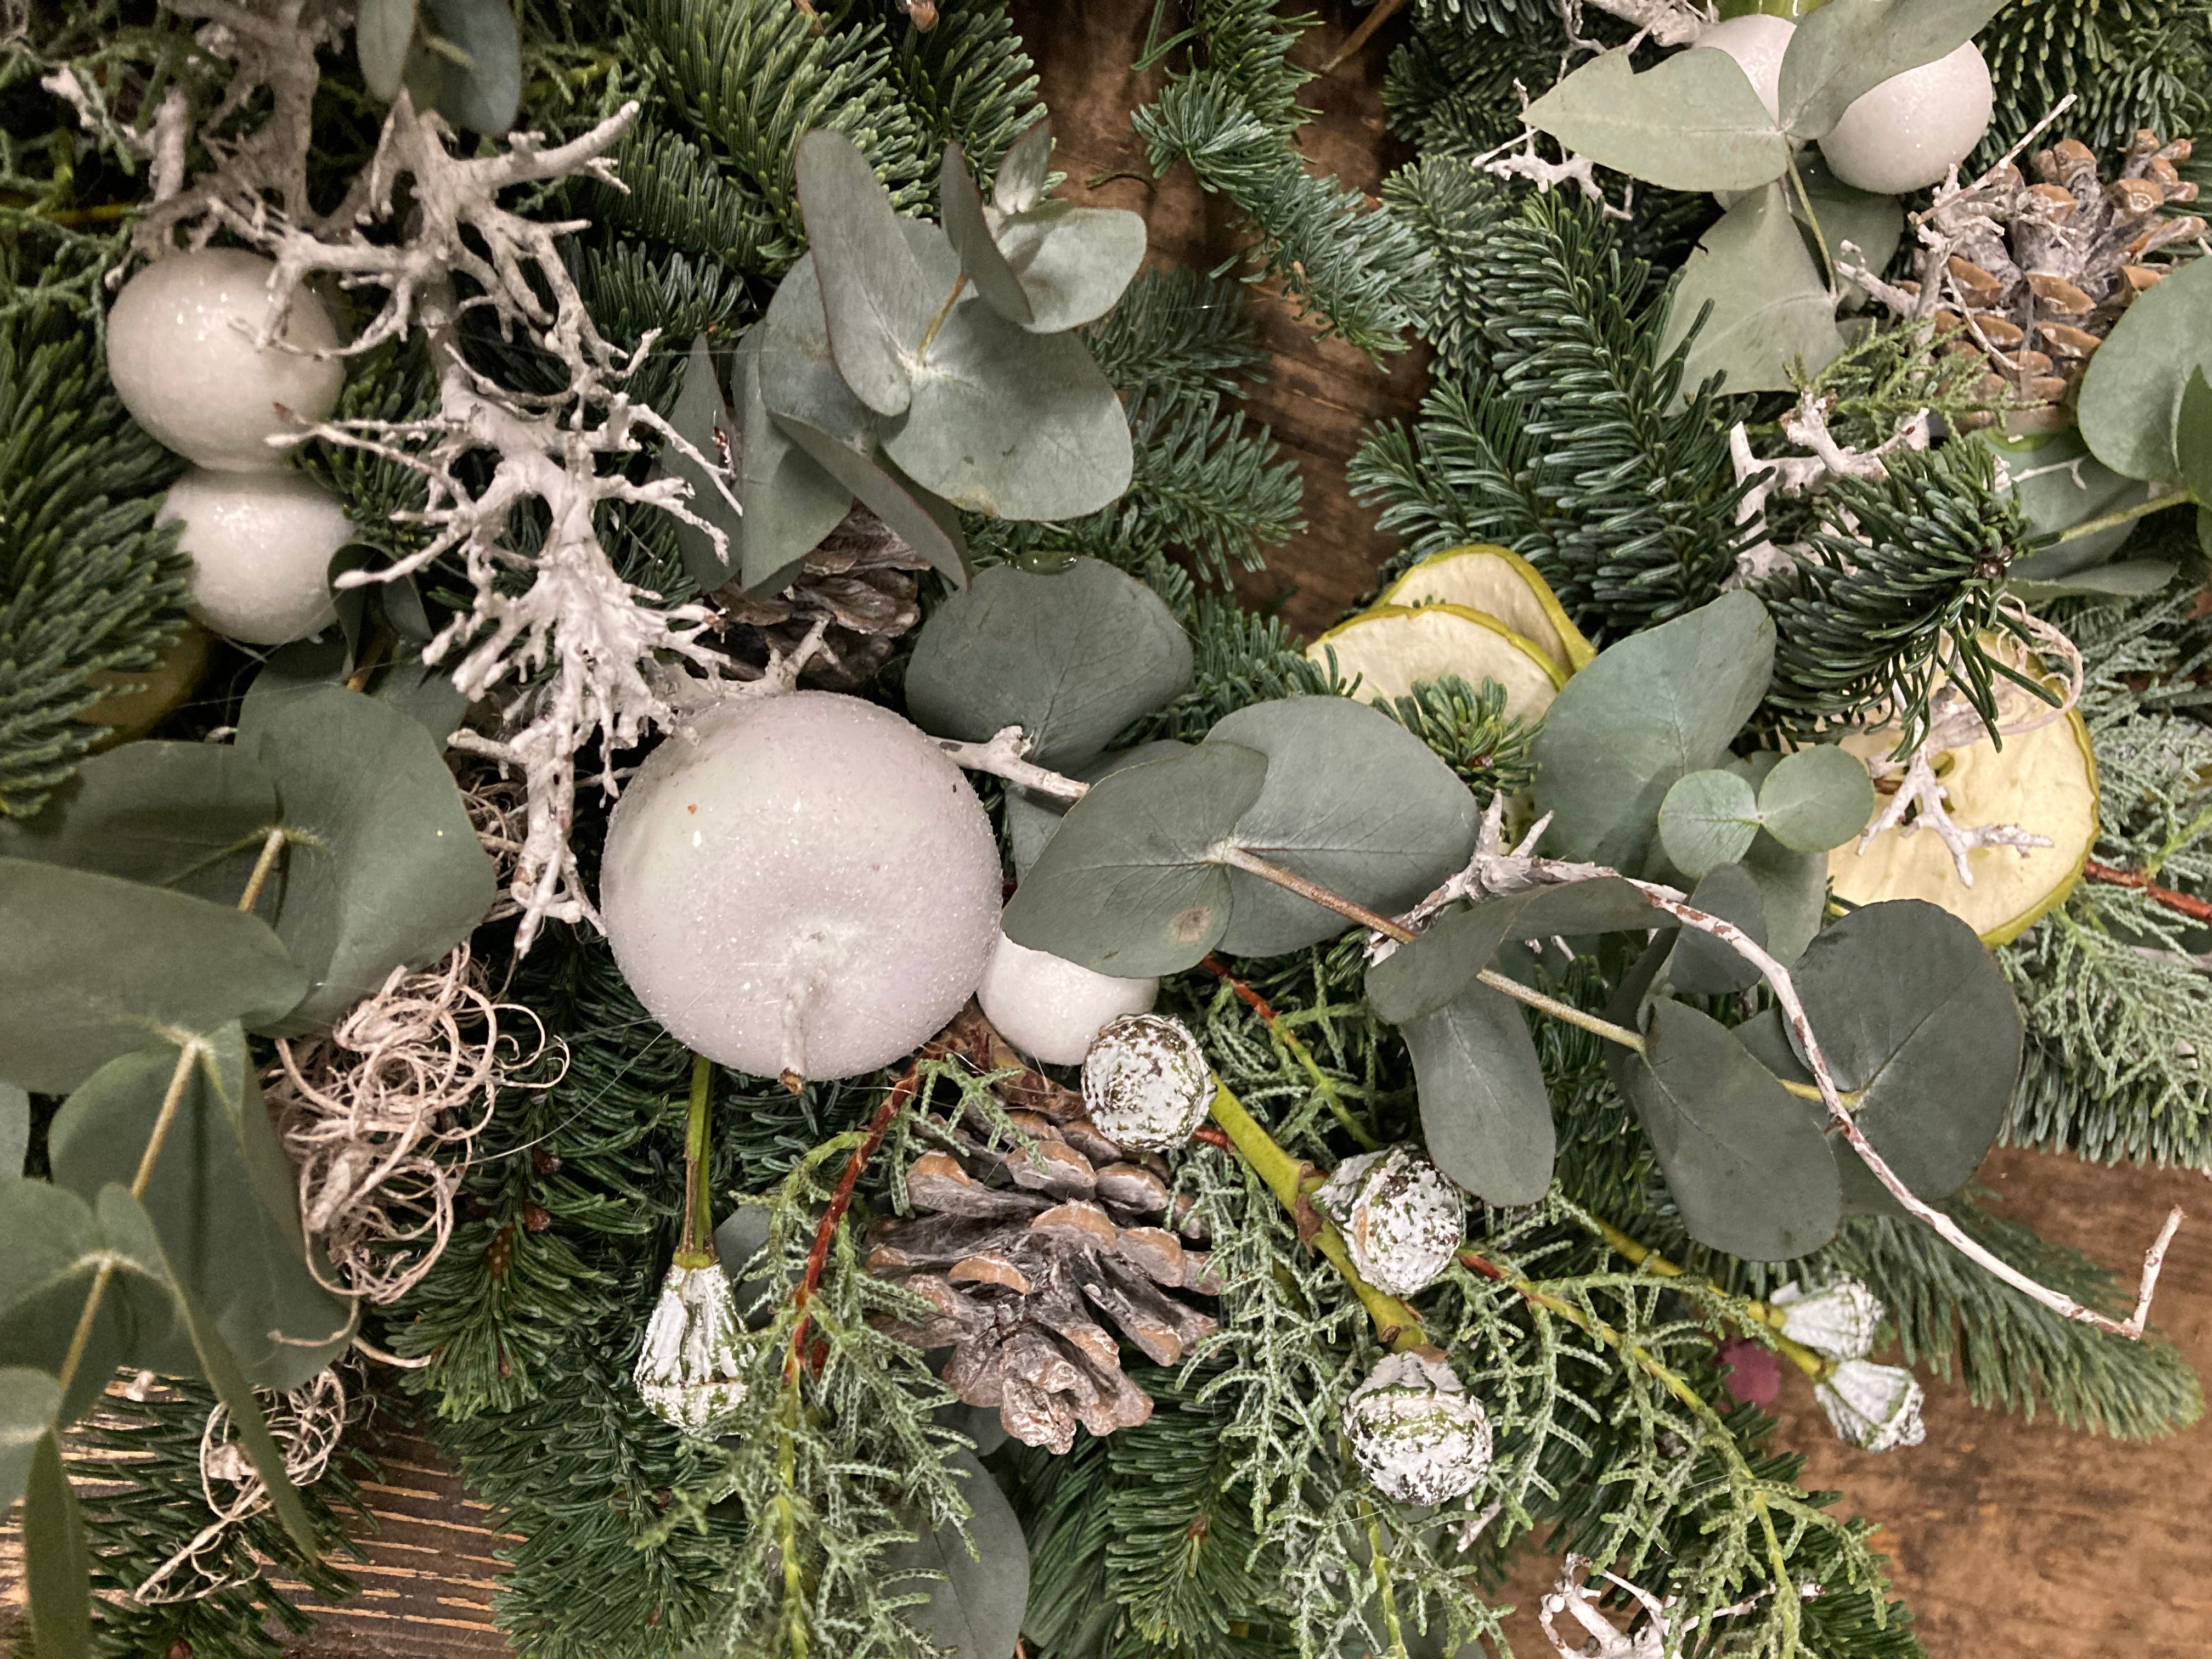 Fabulous frosty wreath